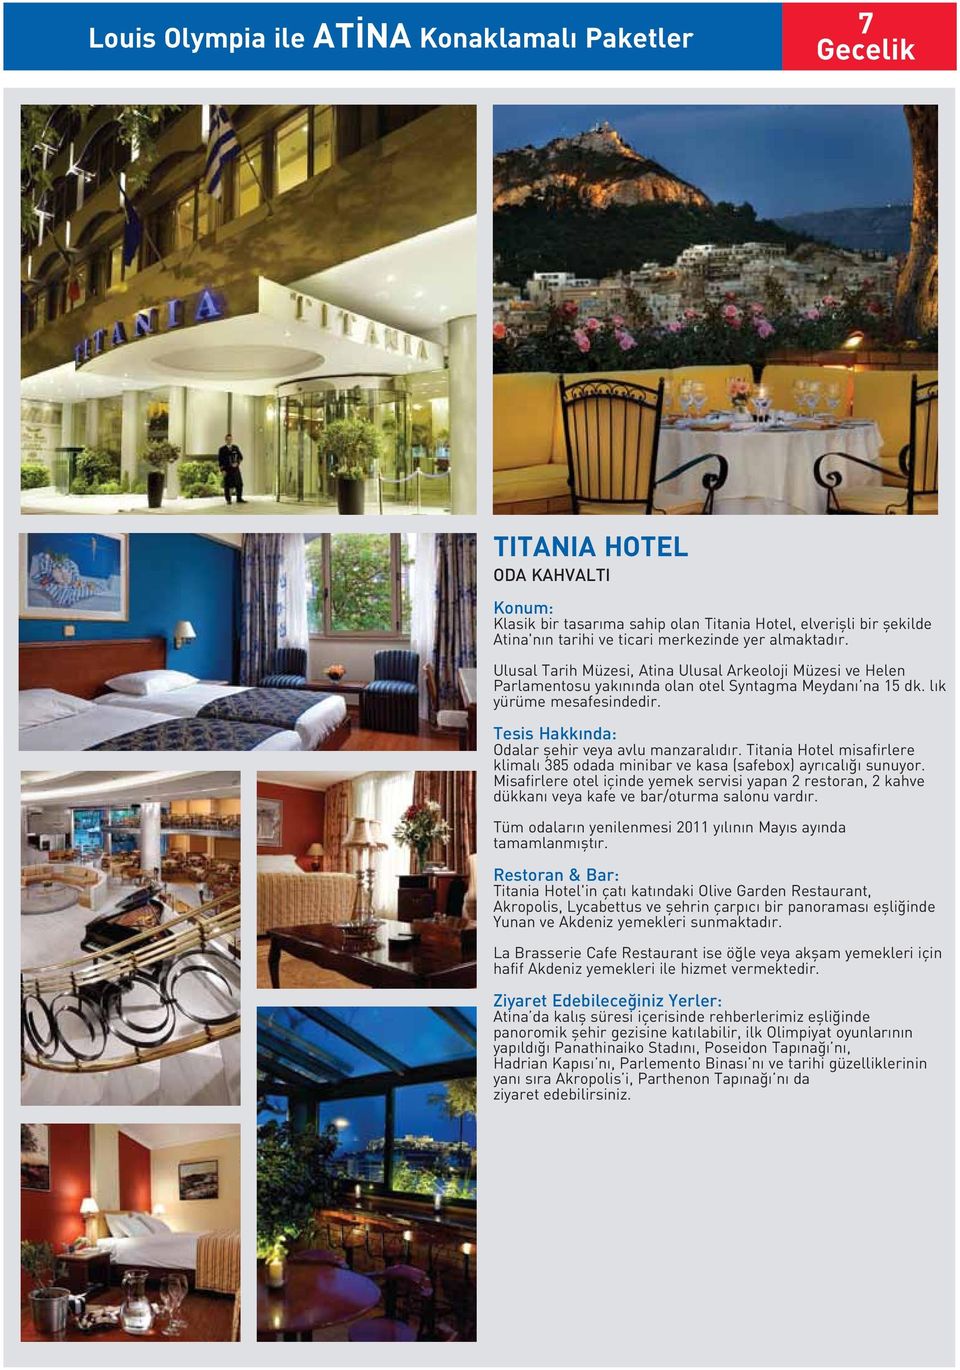 Titania Hotel misafirlere klimalı 385 odada minibar ve kasa (safebox) ayrıcalığı sunuyor. Misafirlere otel içinde yemek servisi yapan 2 restoran, 2 kahve dükkanı veya kafe ve bar/oturma salonu vardır.